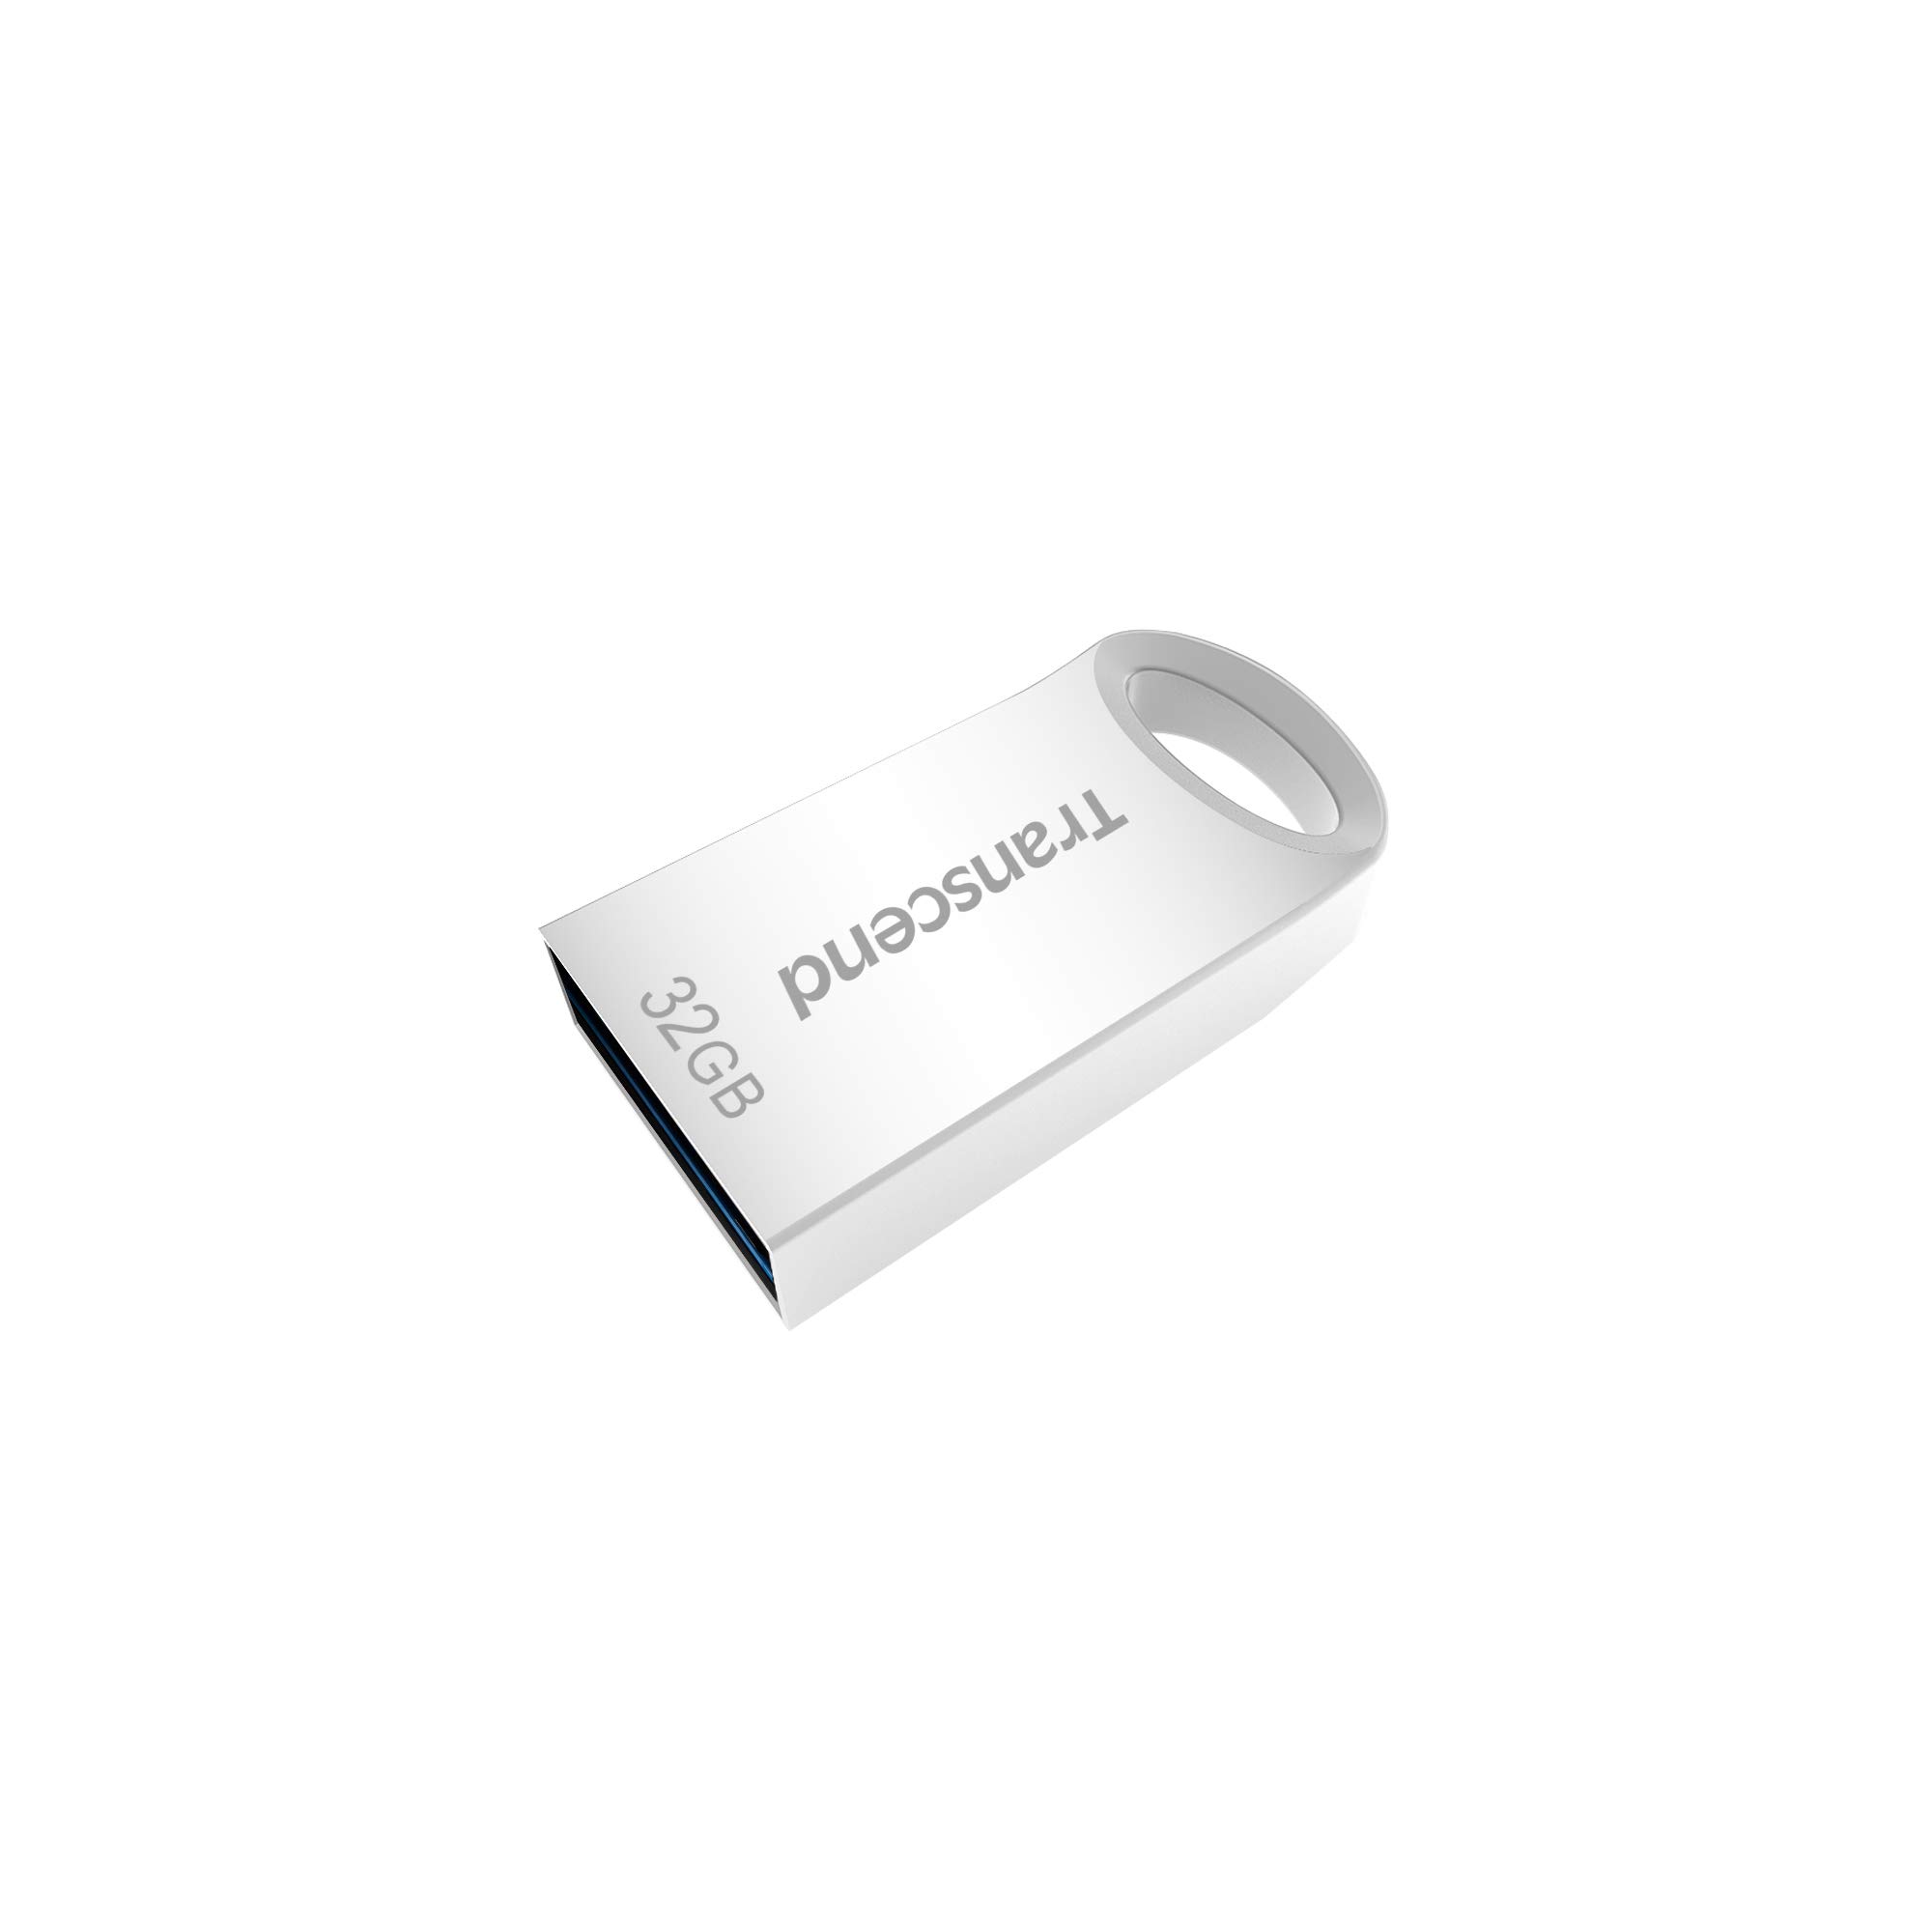 Transcend 32GB JetFlash 710 USB 3.1/3.0 Flash Drive (TS32GJF710S), Silver